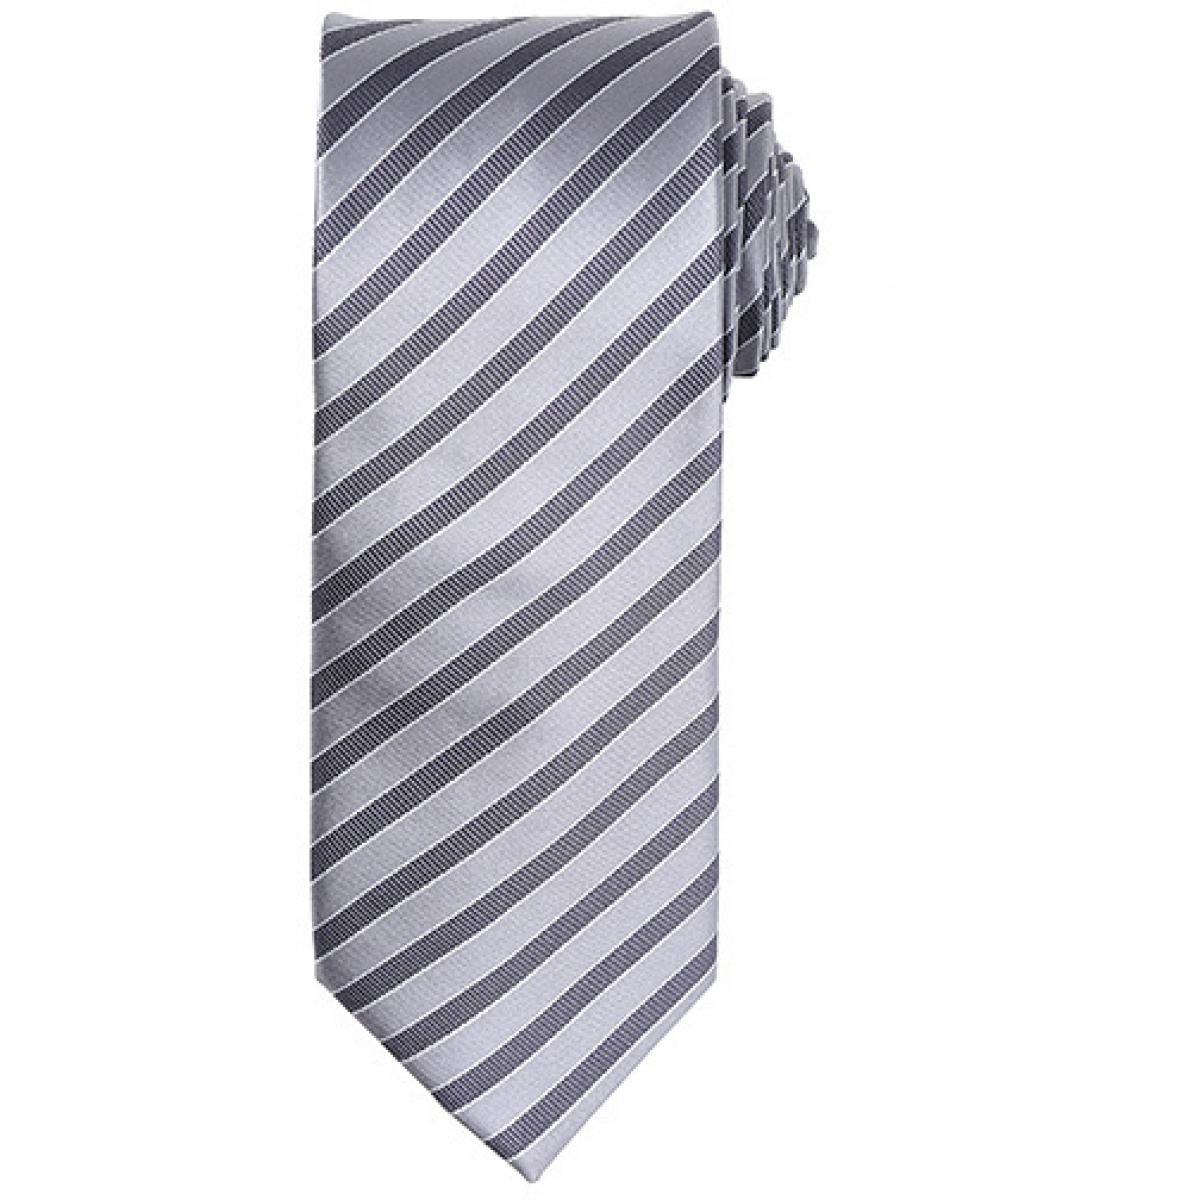 Hersteller: Premier Workwear Herstellernummer: PR782 Artikelbezeichnung: Double Stripe Tie / Breite 3" / 7,5 cm / Länge 57" / 144 cm Farbe: Silver/Dark Grey